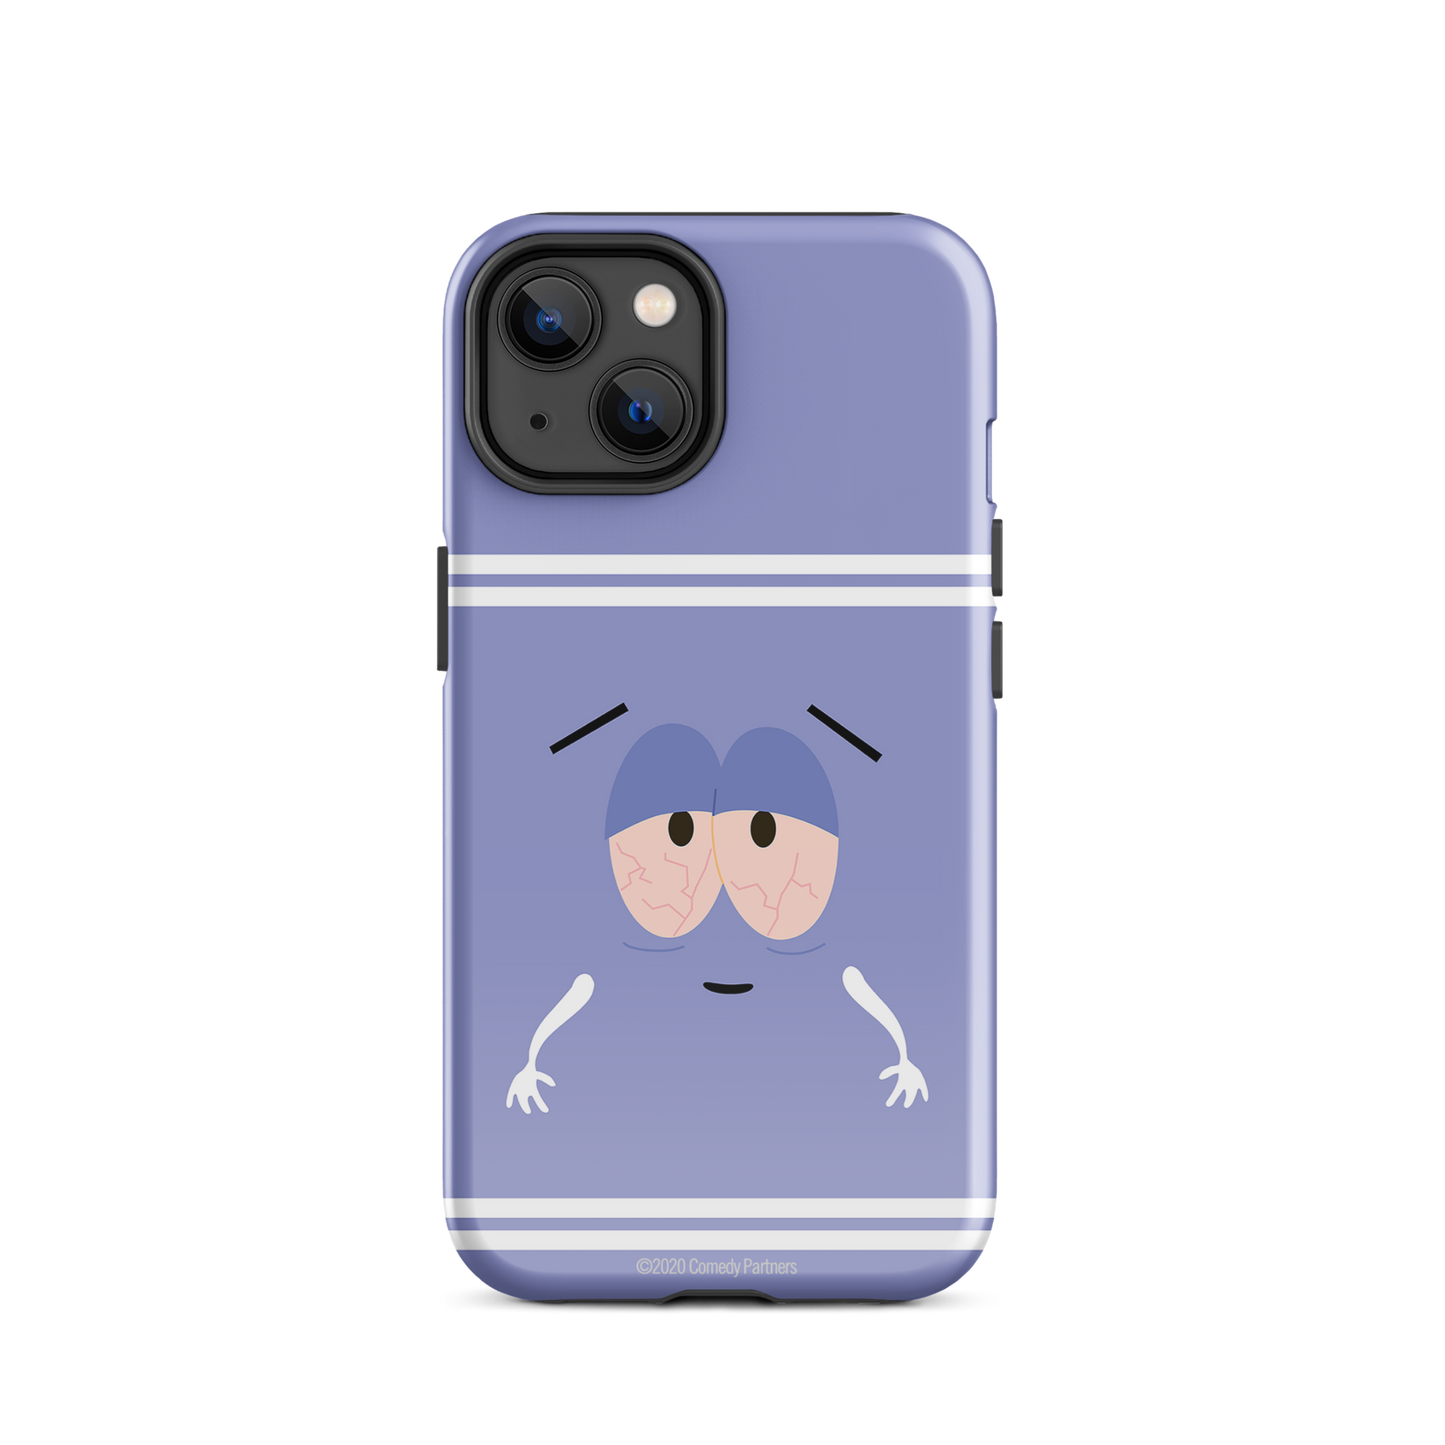 South Park Étui résistant pour téléphone Towelie - iPhone